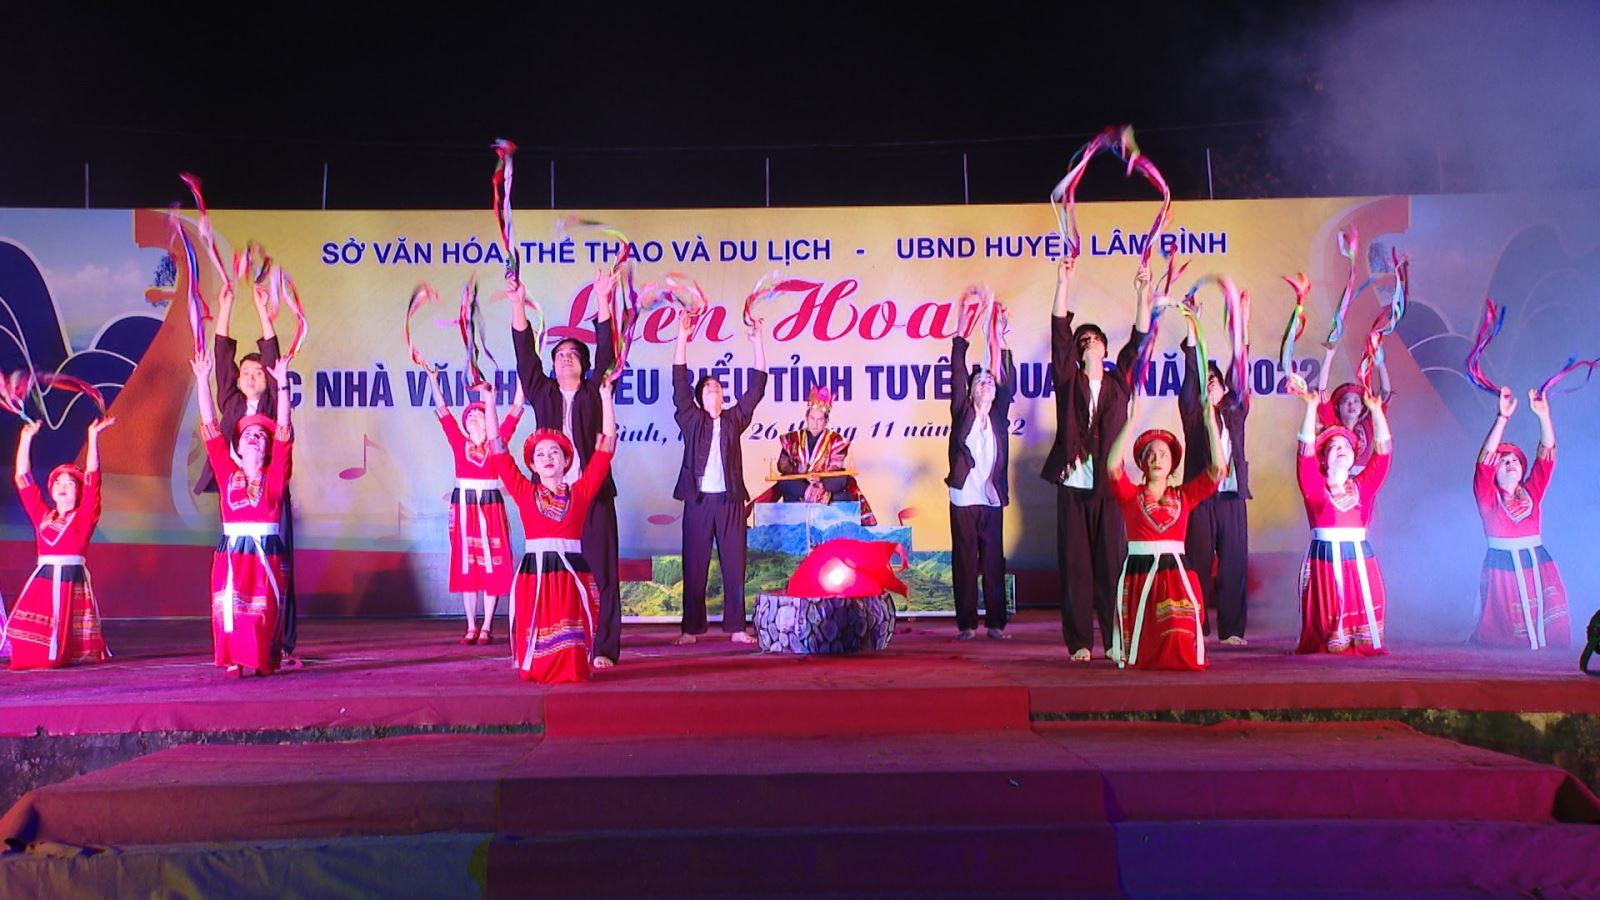 Liên hoan các Nhà Văn hóa tiêu biểu tỉnh Tuyên Quang năm 2022